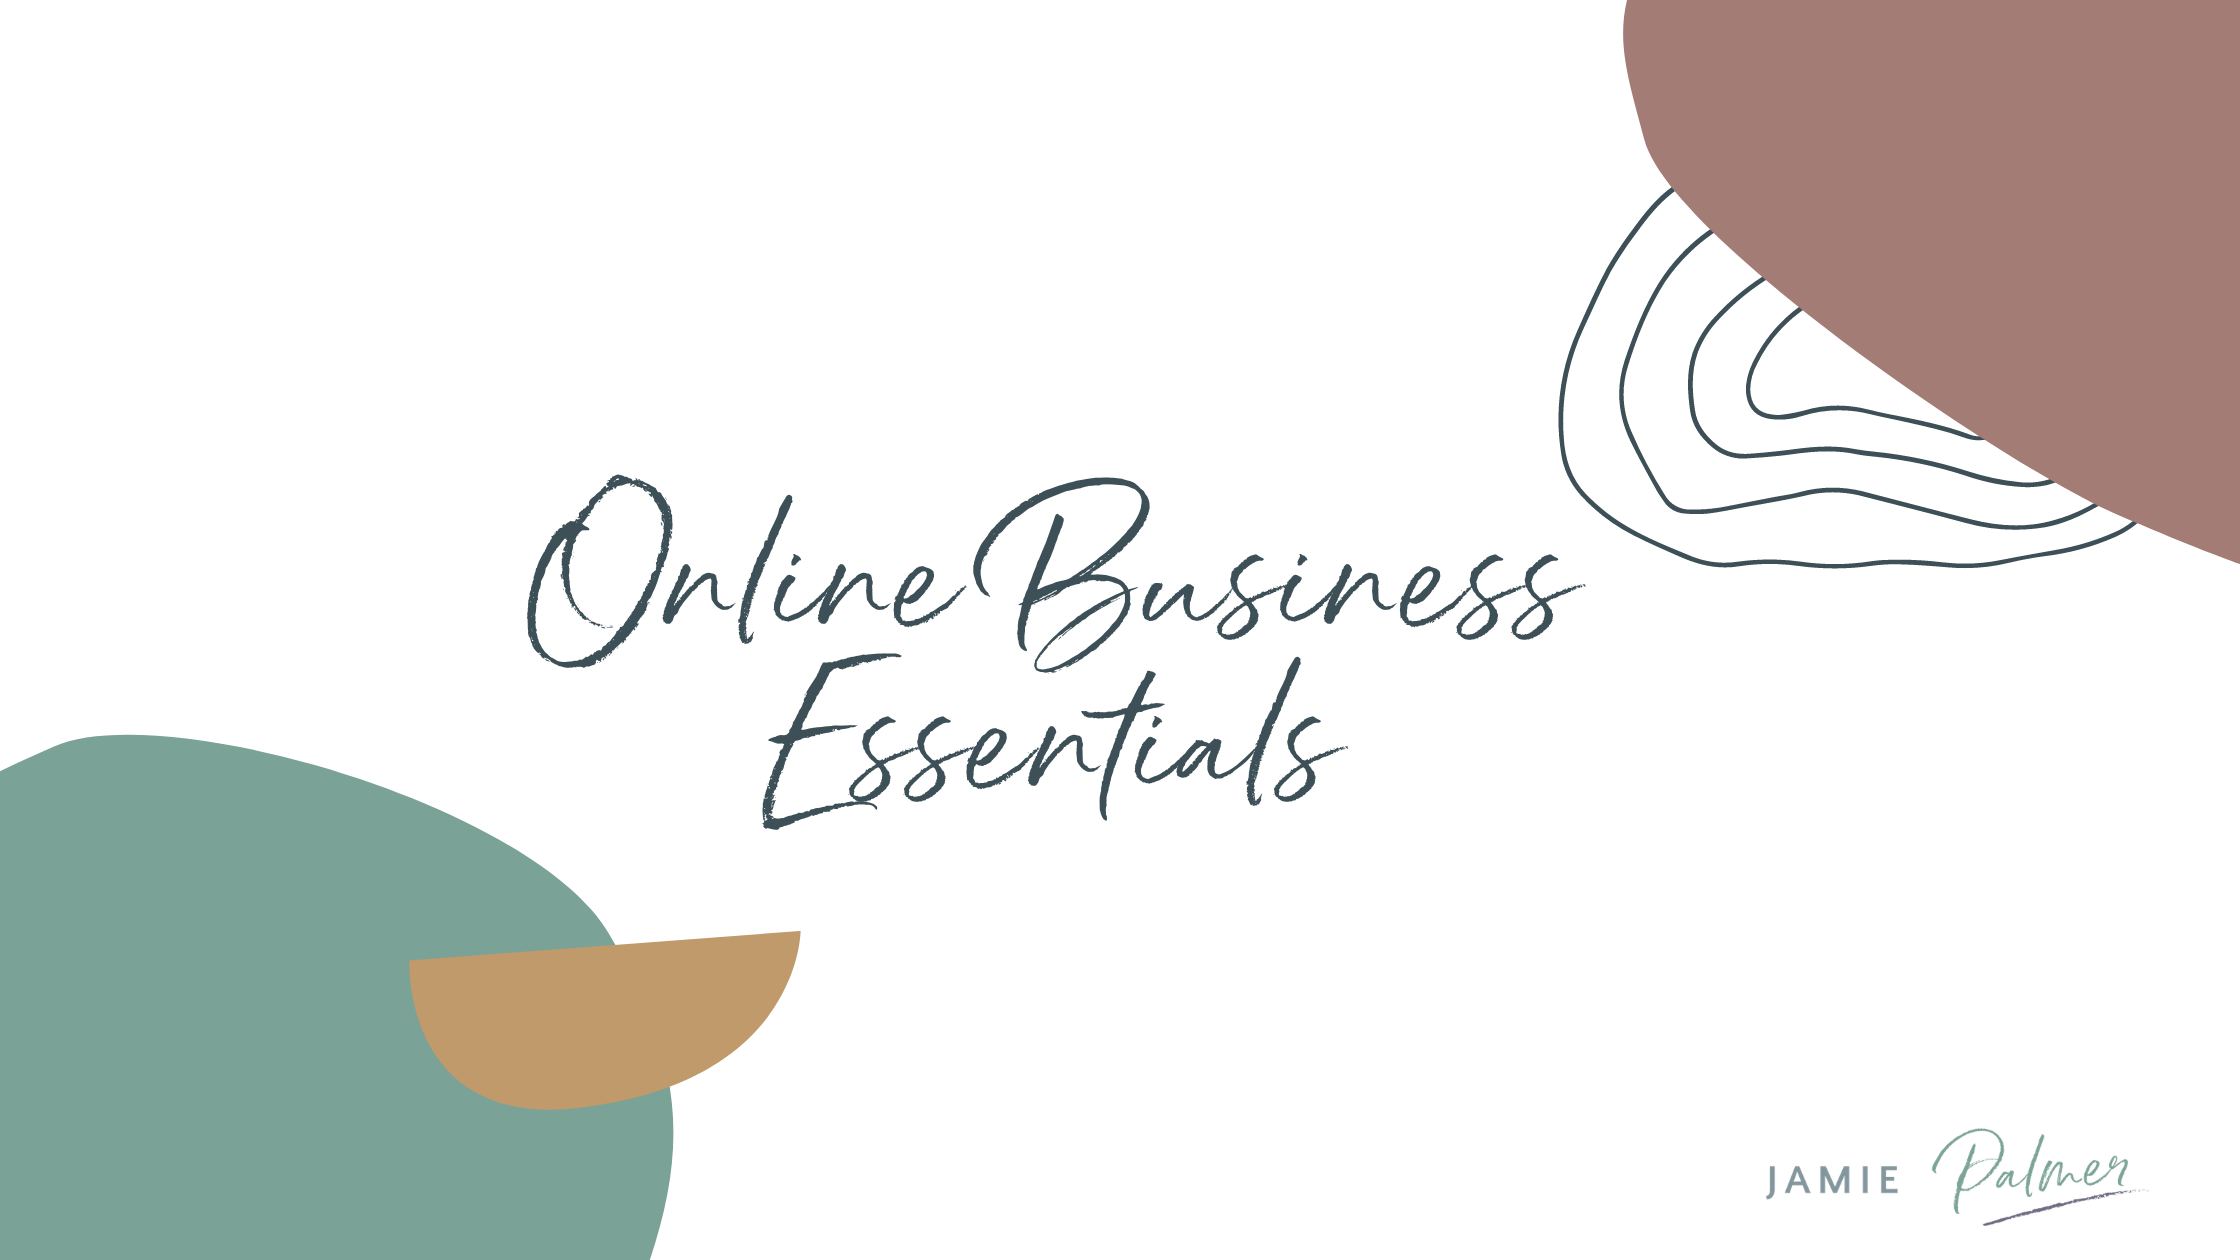 Online Business Essentials Blog